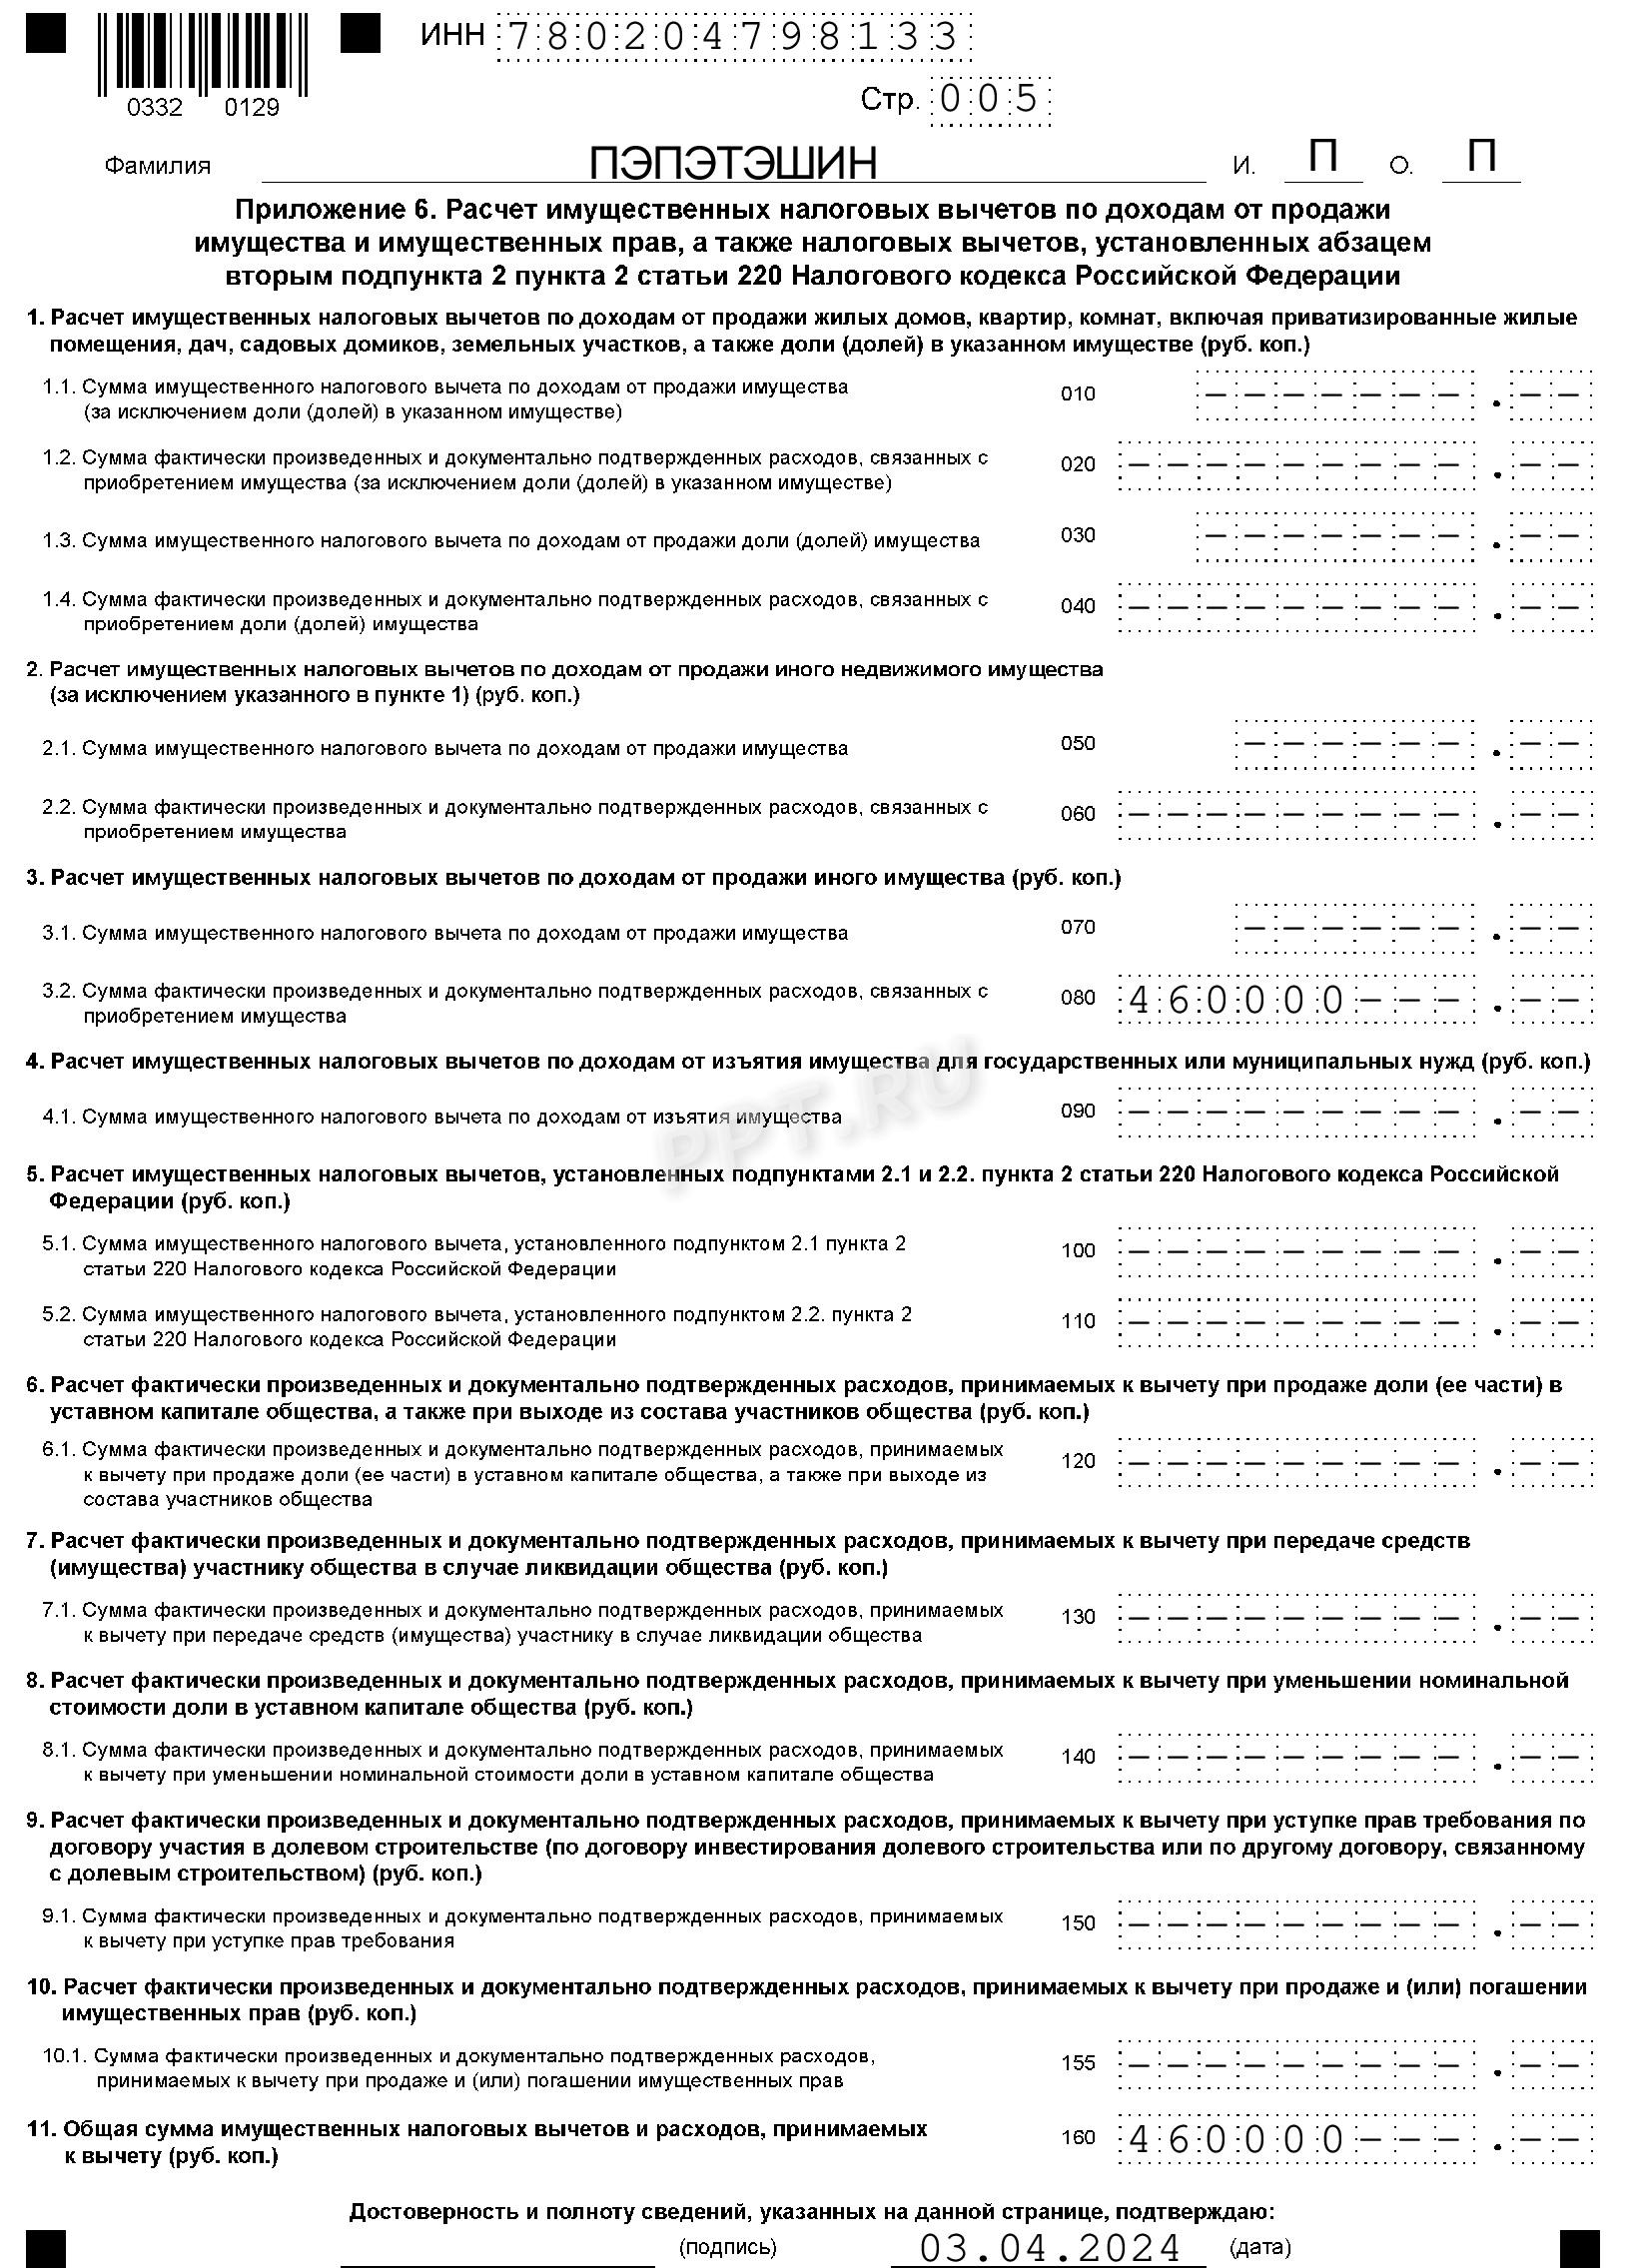 Примеры заполнения налоговых деклараций по форме 3-НДФЛ